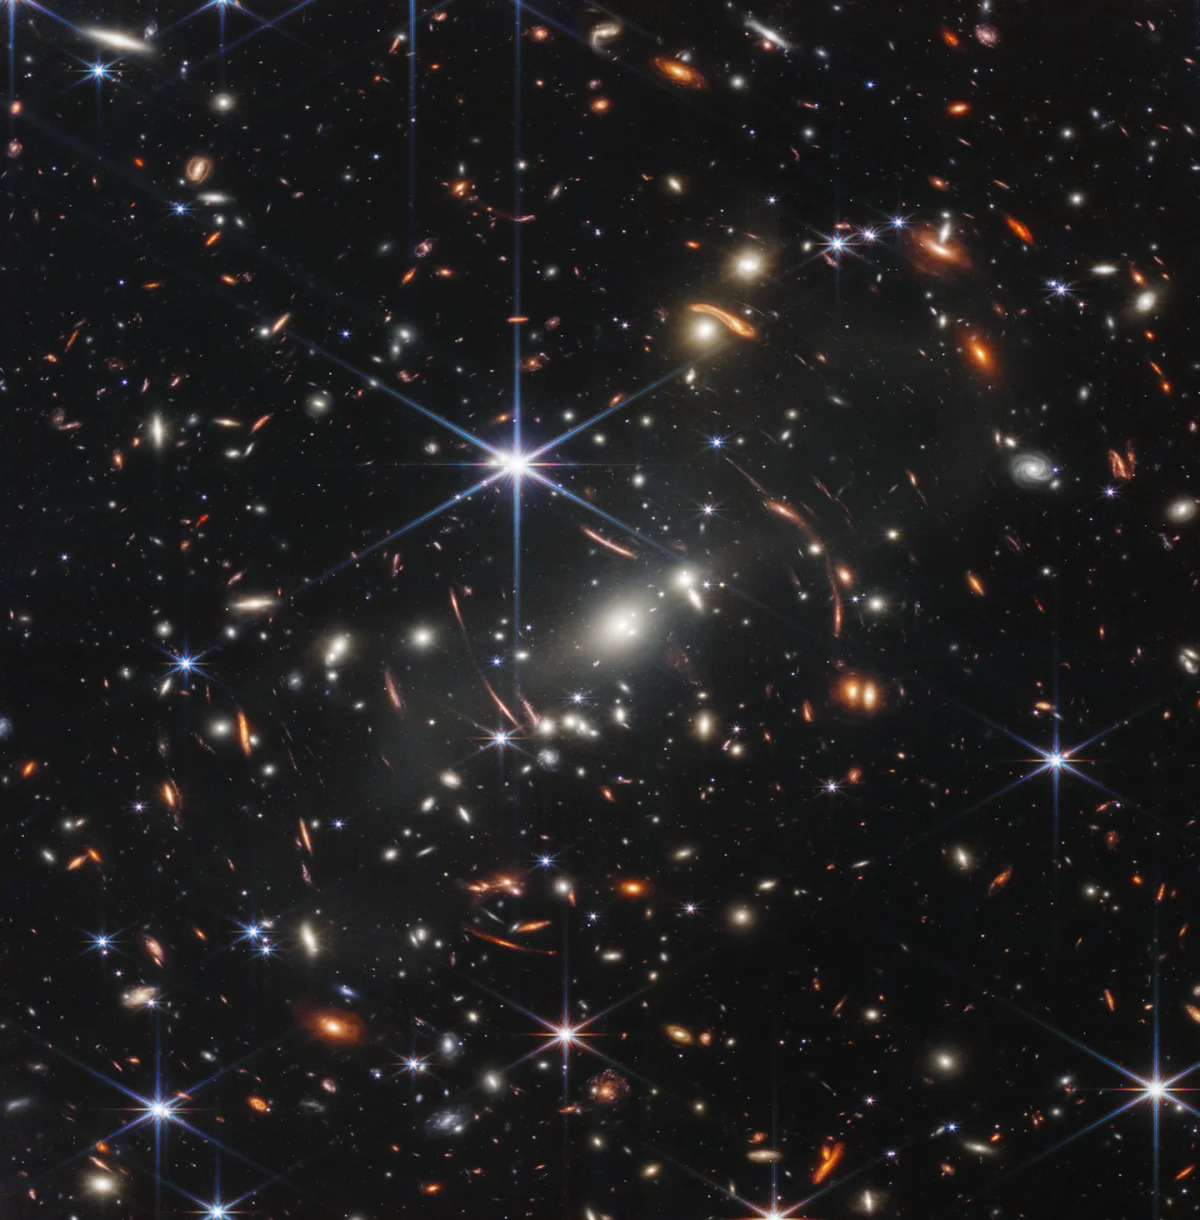 James Webb Telescope Peers 13.5 Billion Years Back to Cosmic Dawn